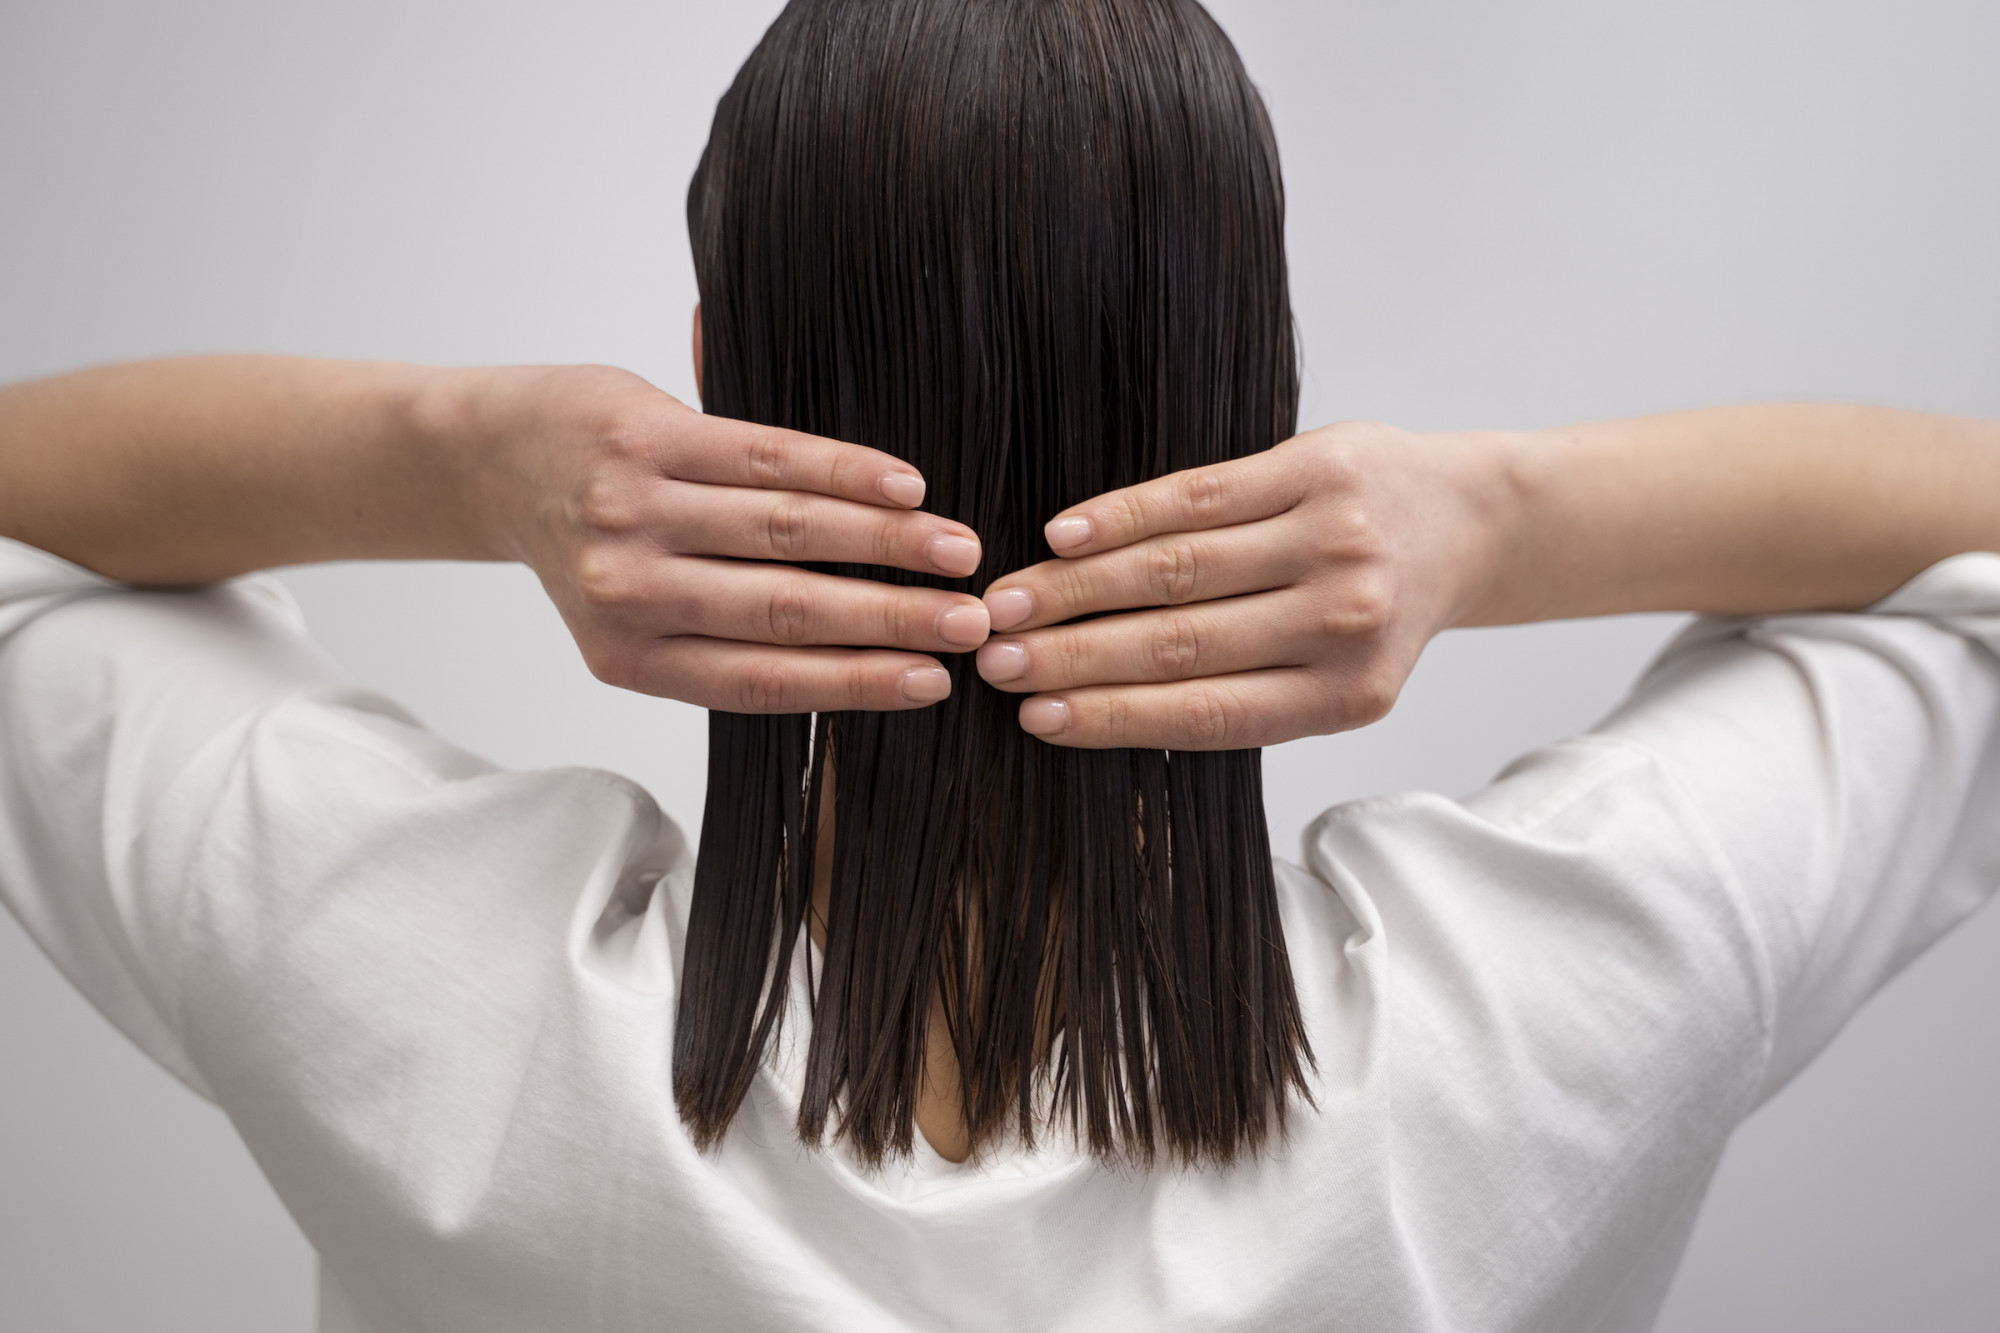 Nhẹ tay với tóc ướt  Tóc dễ tổn thương nhất là khi đang ướt, và đó là lí do bạn không nên lau tóc với khăn khô. Khi đã có tuổi, tóc của phụ nữ chúng ta càng trở nên mong manh, dễ tổn thương hơn và việc chải tóc ngay sau khi tắm cũng là một thói quen bạn nên sửa ngay từ bây giờ.  Bạn nên gỡ rối tóc bằng lược răng thưa khi vẫn còn dầu xả trên tóc, như vậy sẽ hạn chế tối đa tóc rối và khiến việc chải tóc dễ dàng hơn nhiều. Đồng thời mỗi tuần bạn nên ủ sâu tóc với tinh dầu như dầu hướng dương hay dầu dừa từ 1 đến 2 lần.